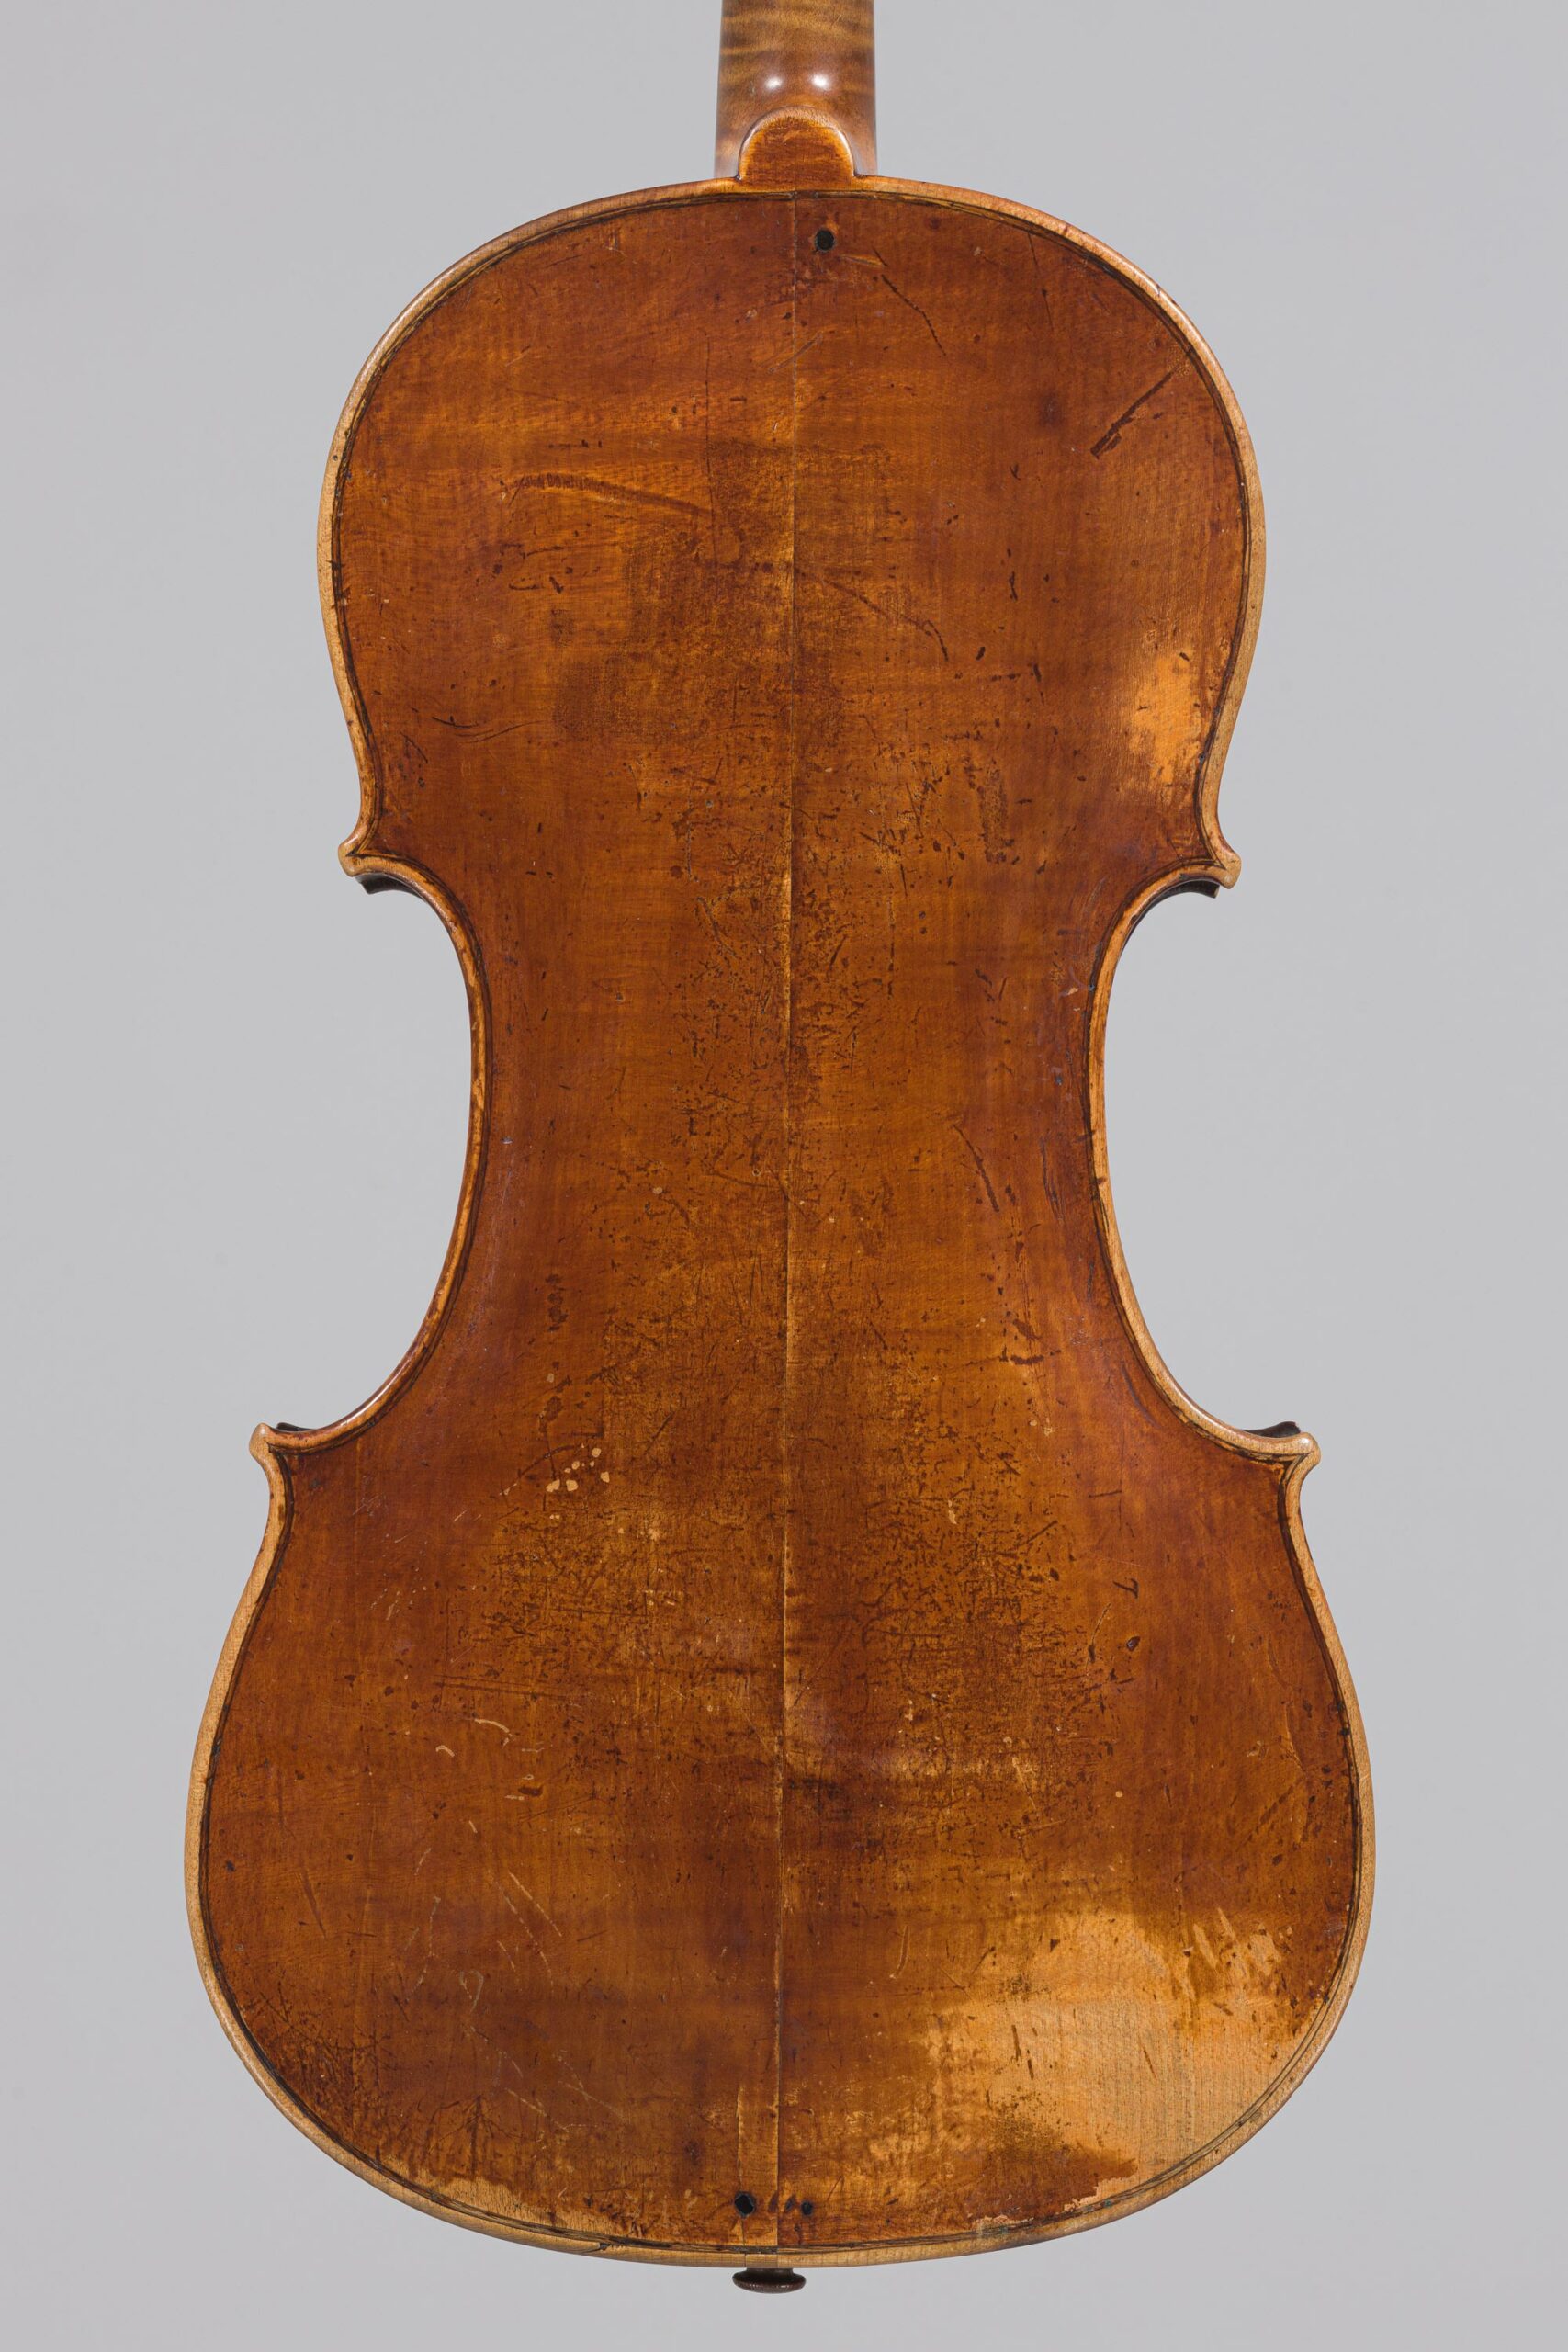 Lot 560 Alto Français fait vers 1770/1780 - Collection Calas Instrument mis en vente par Vichy Enchères le 30 novembre 2022 © C. Darbelet